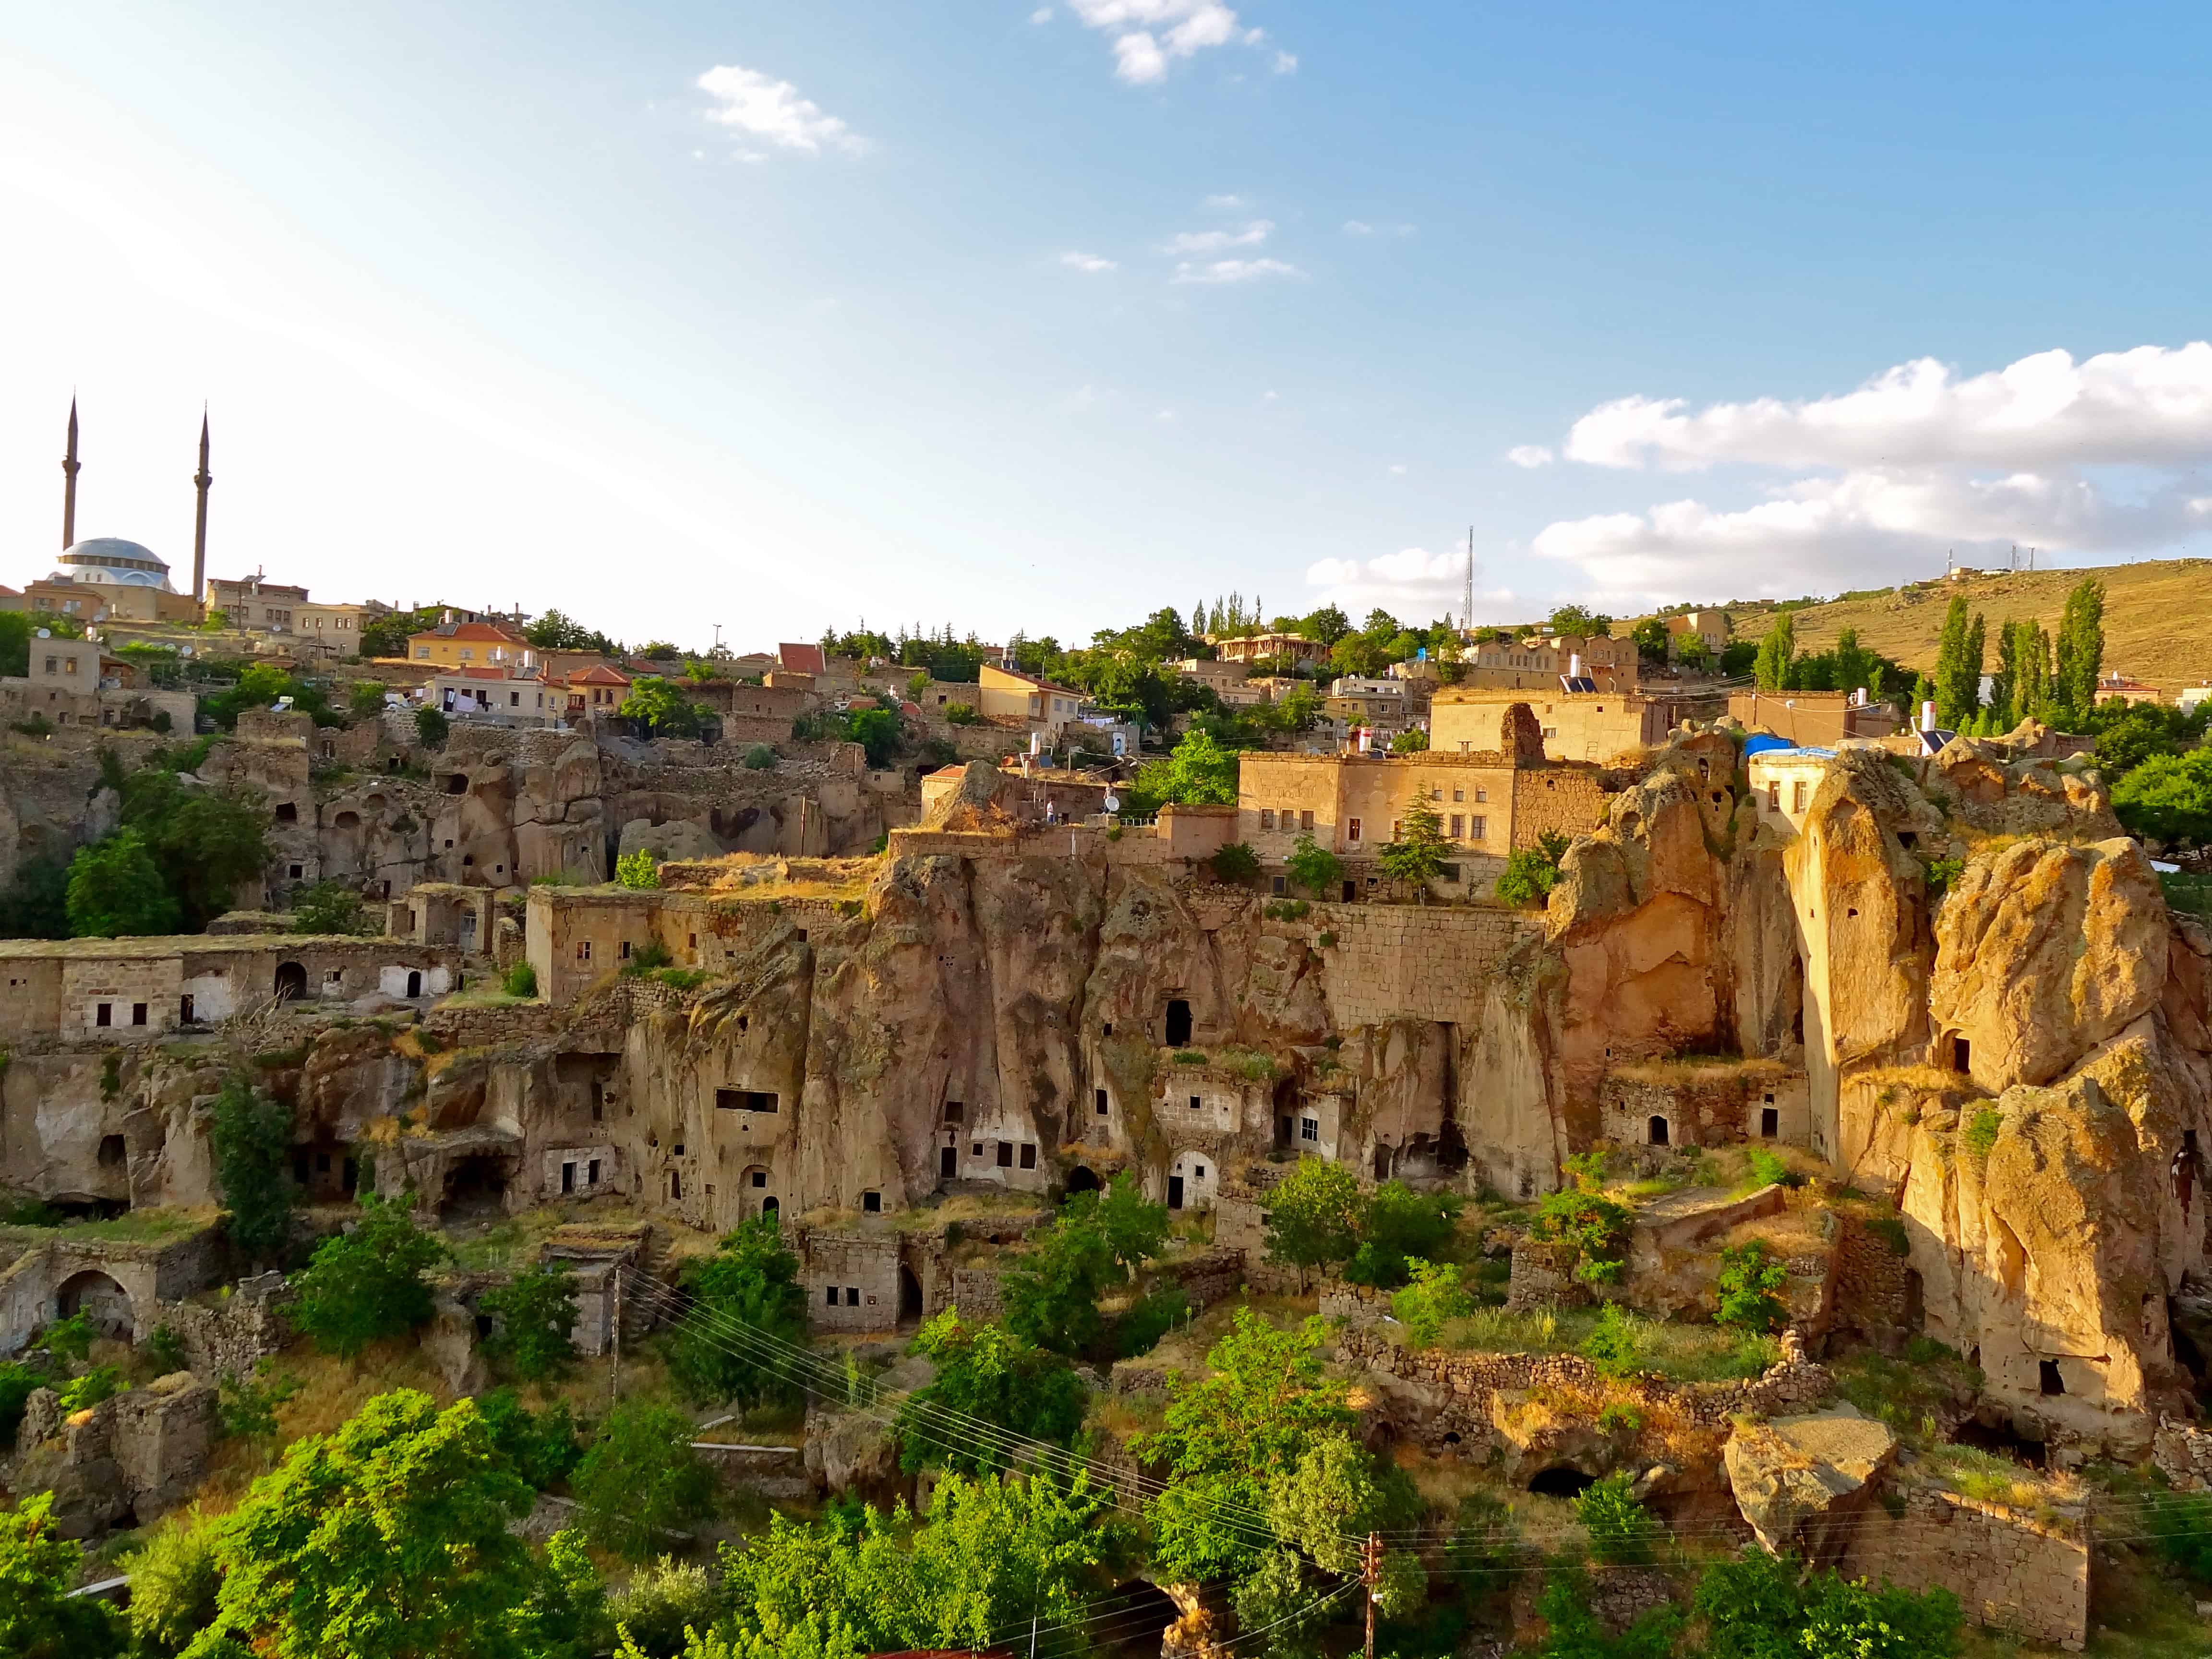 Turkey photos, Cappadocia photos, Guzelyurt